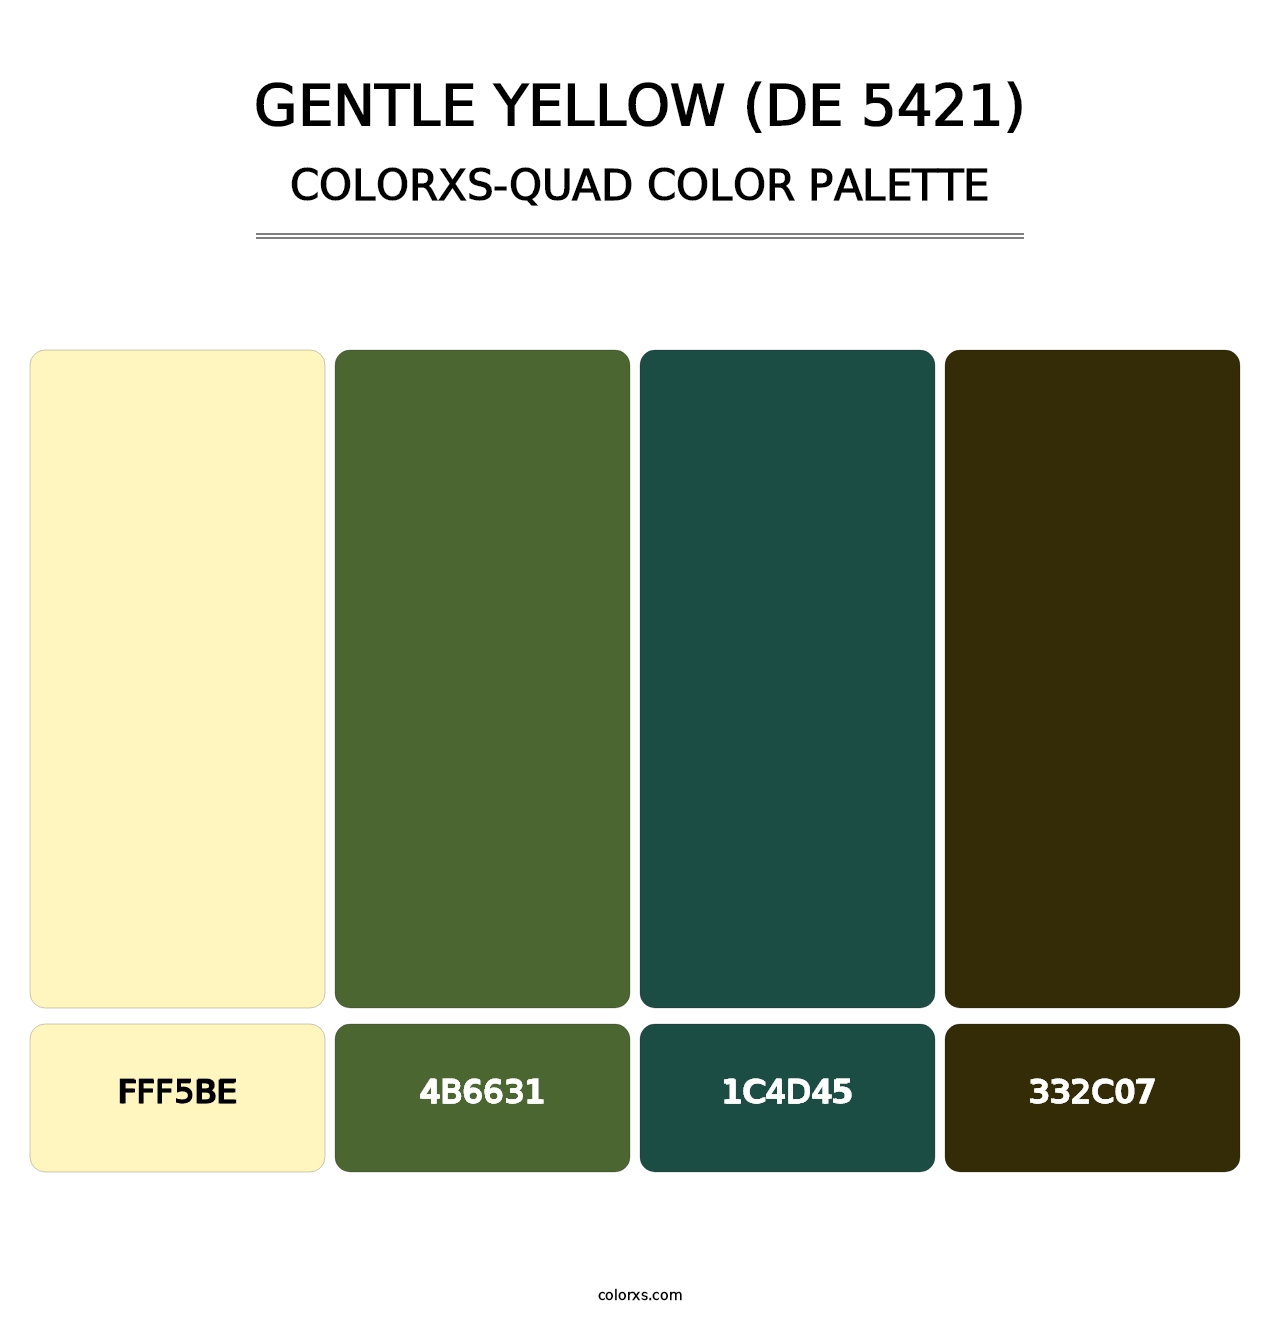 Gentle Yellow (DE 5421) - Colorxs Quad Palette